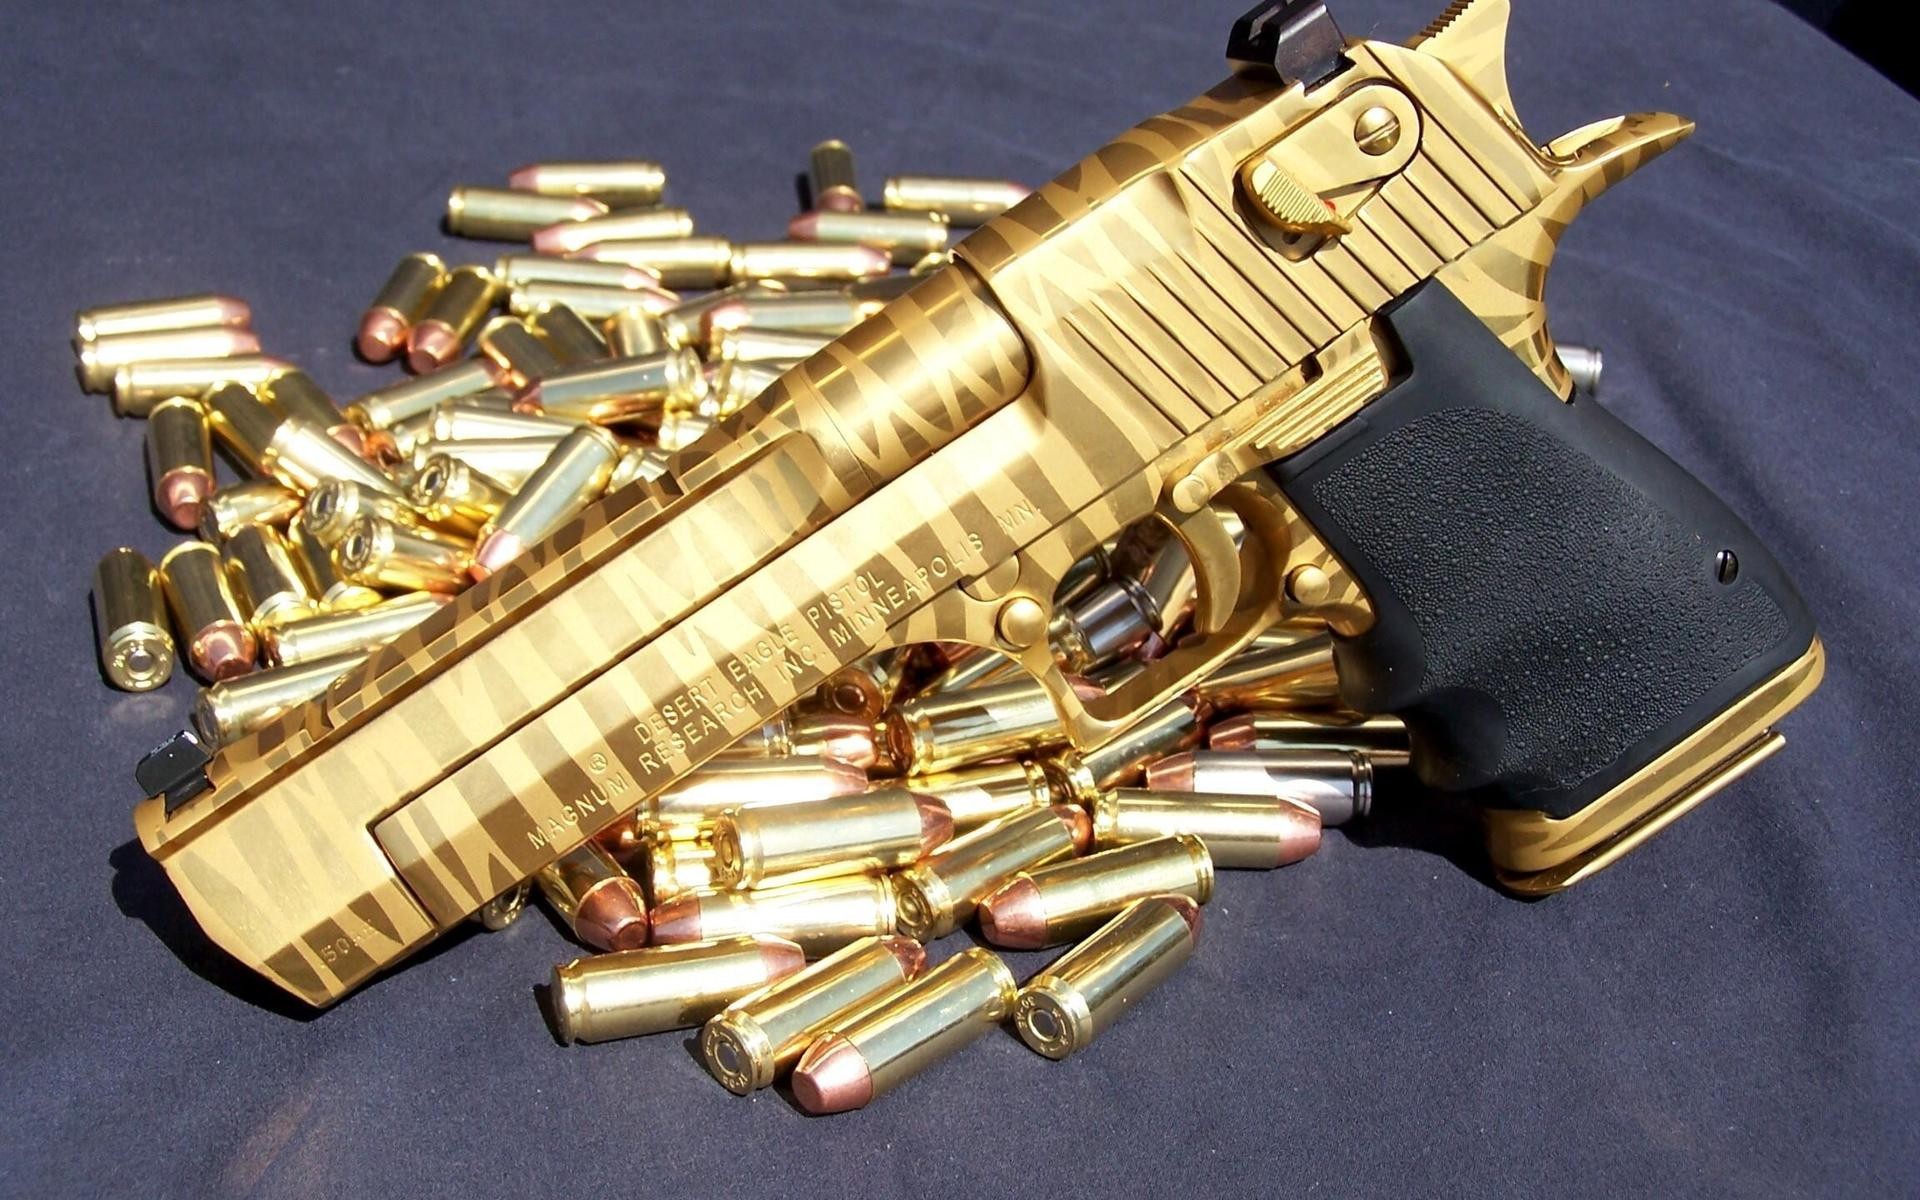 money and guns wallpaper,gun,firearm,revolver,ammunition,brass